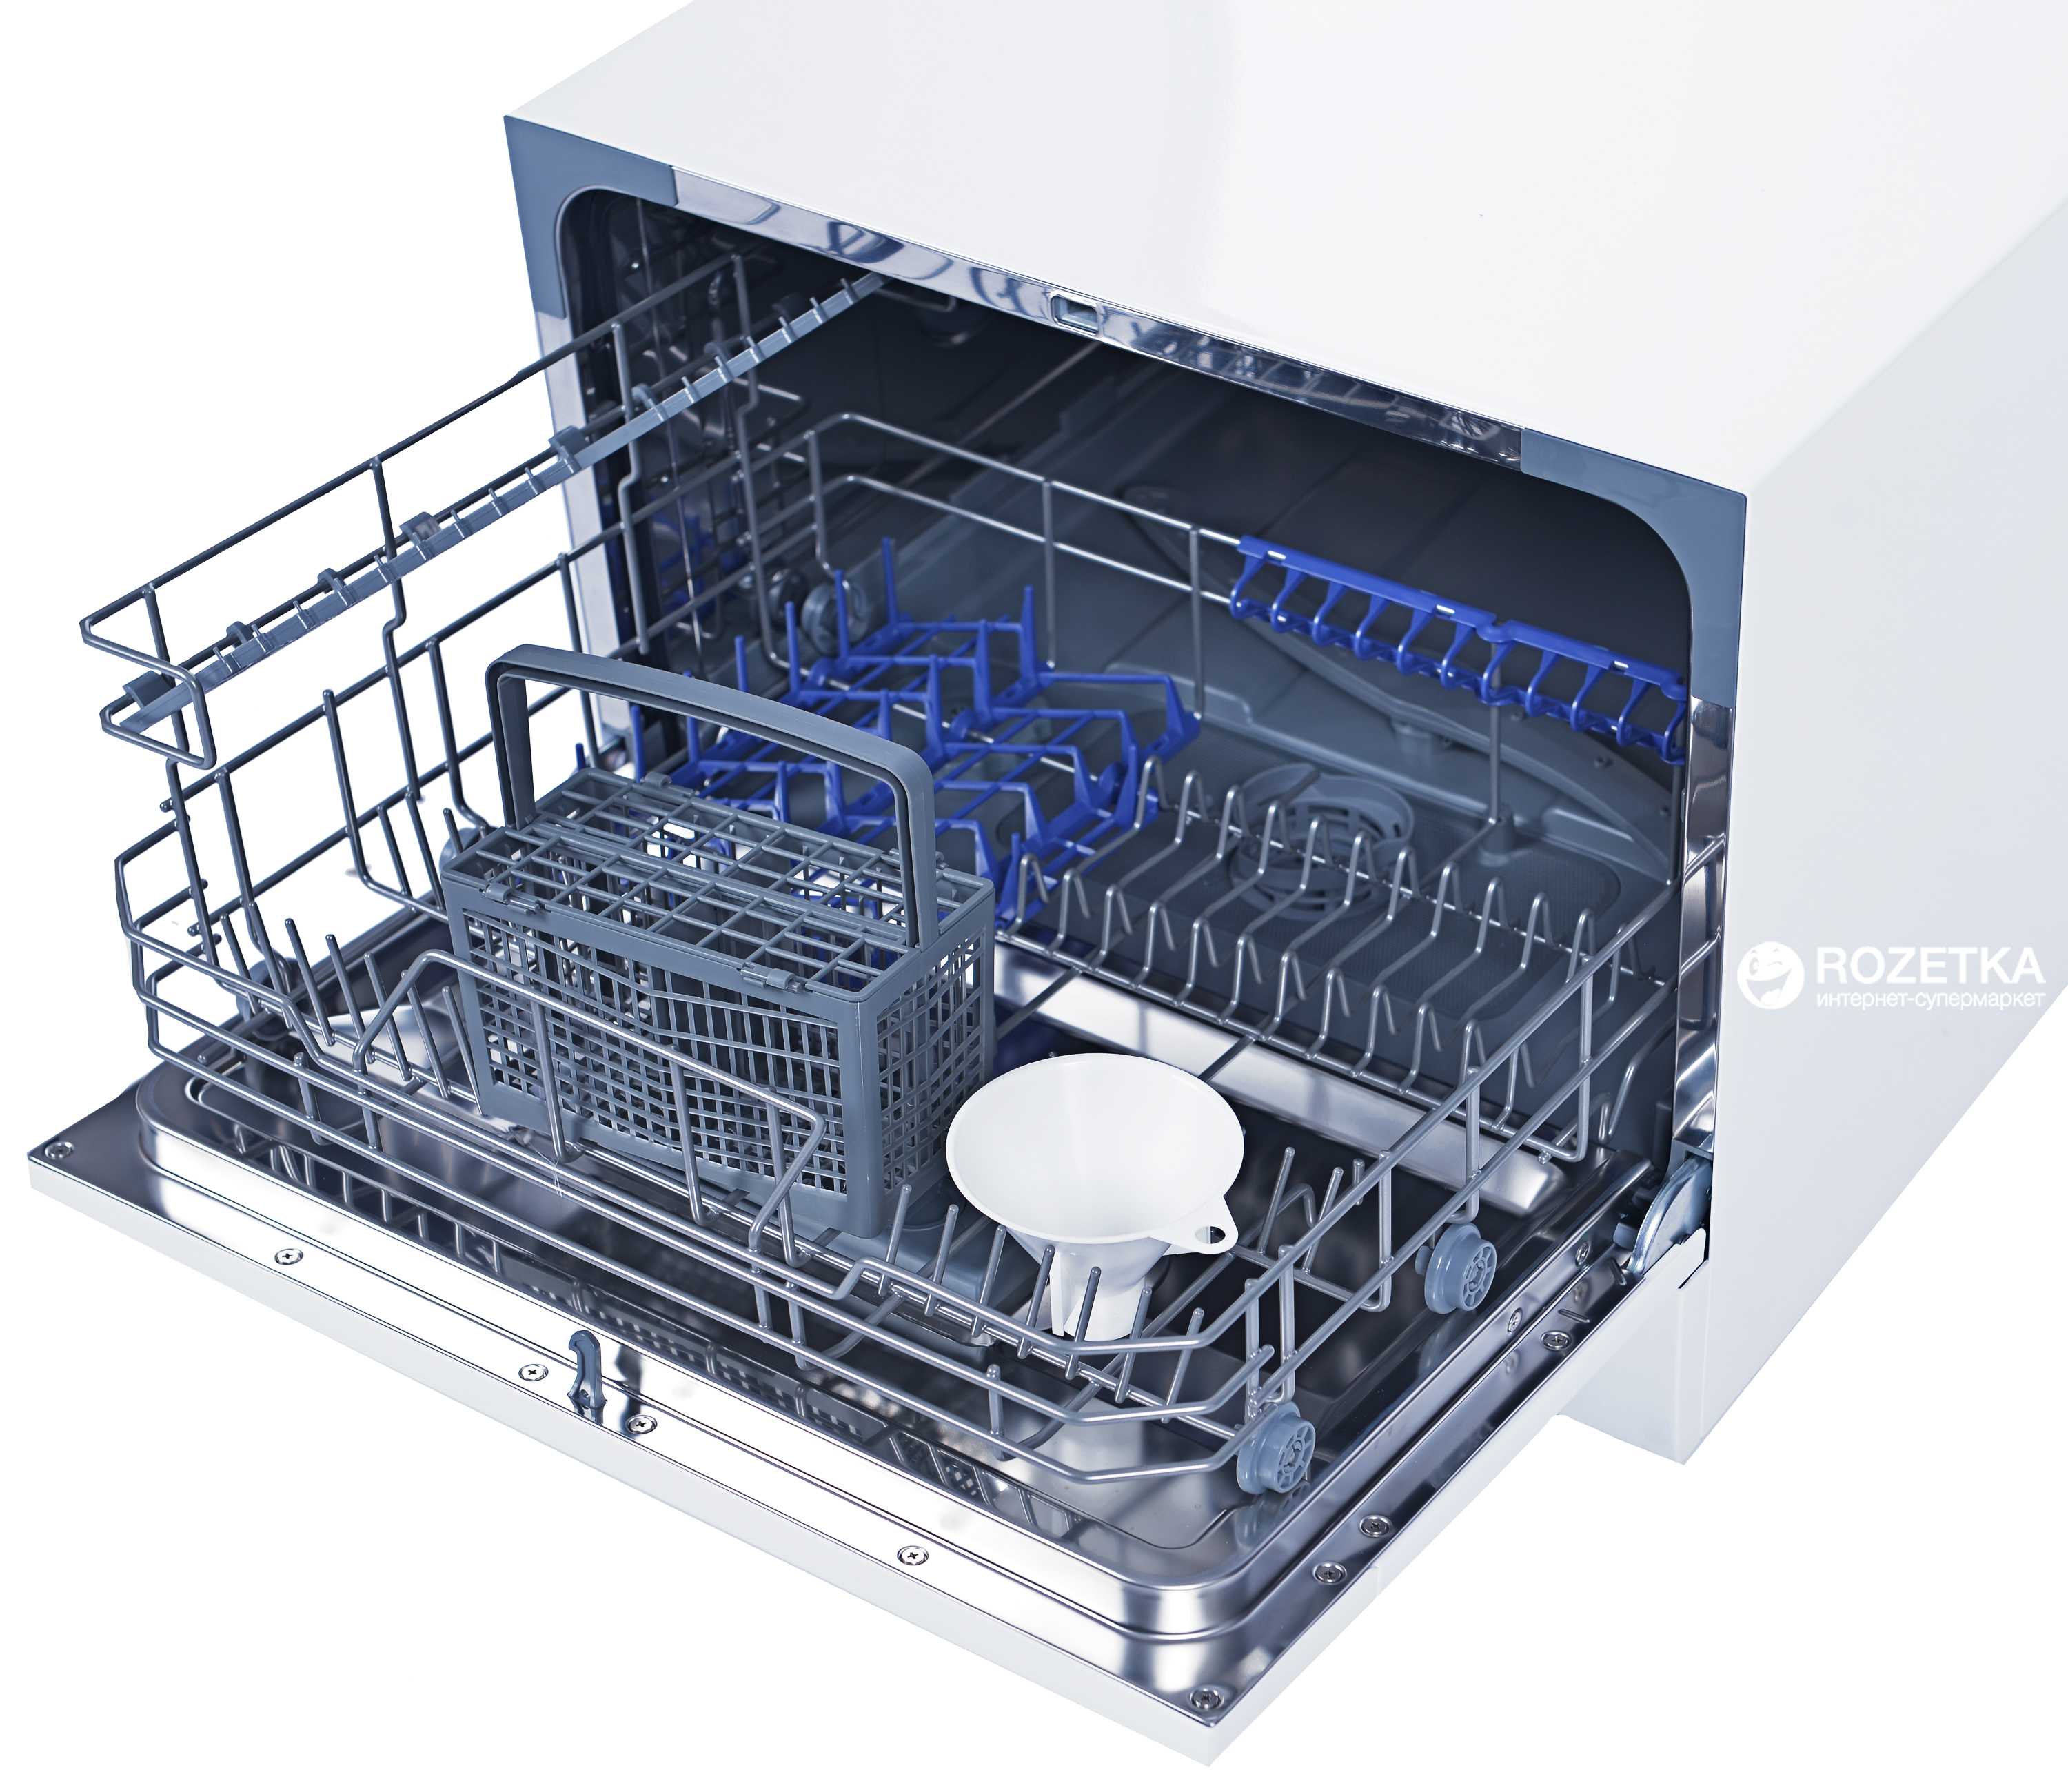 Обзор посудомоечной машины candy cdcf 6e-07: характеристики, функции, отзывы владельцев